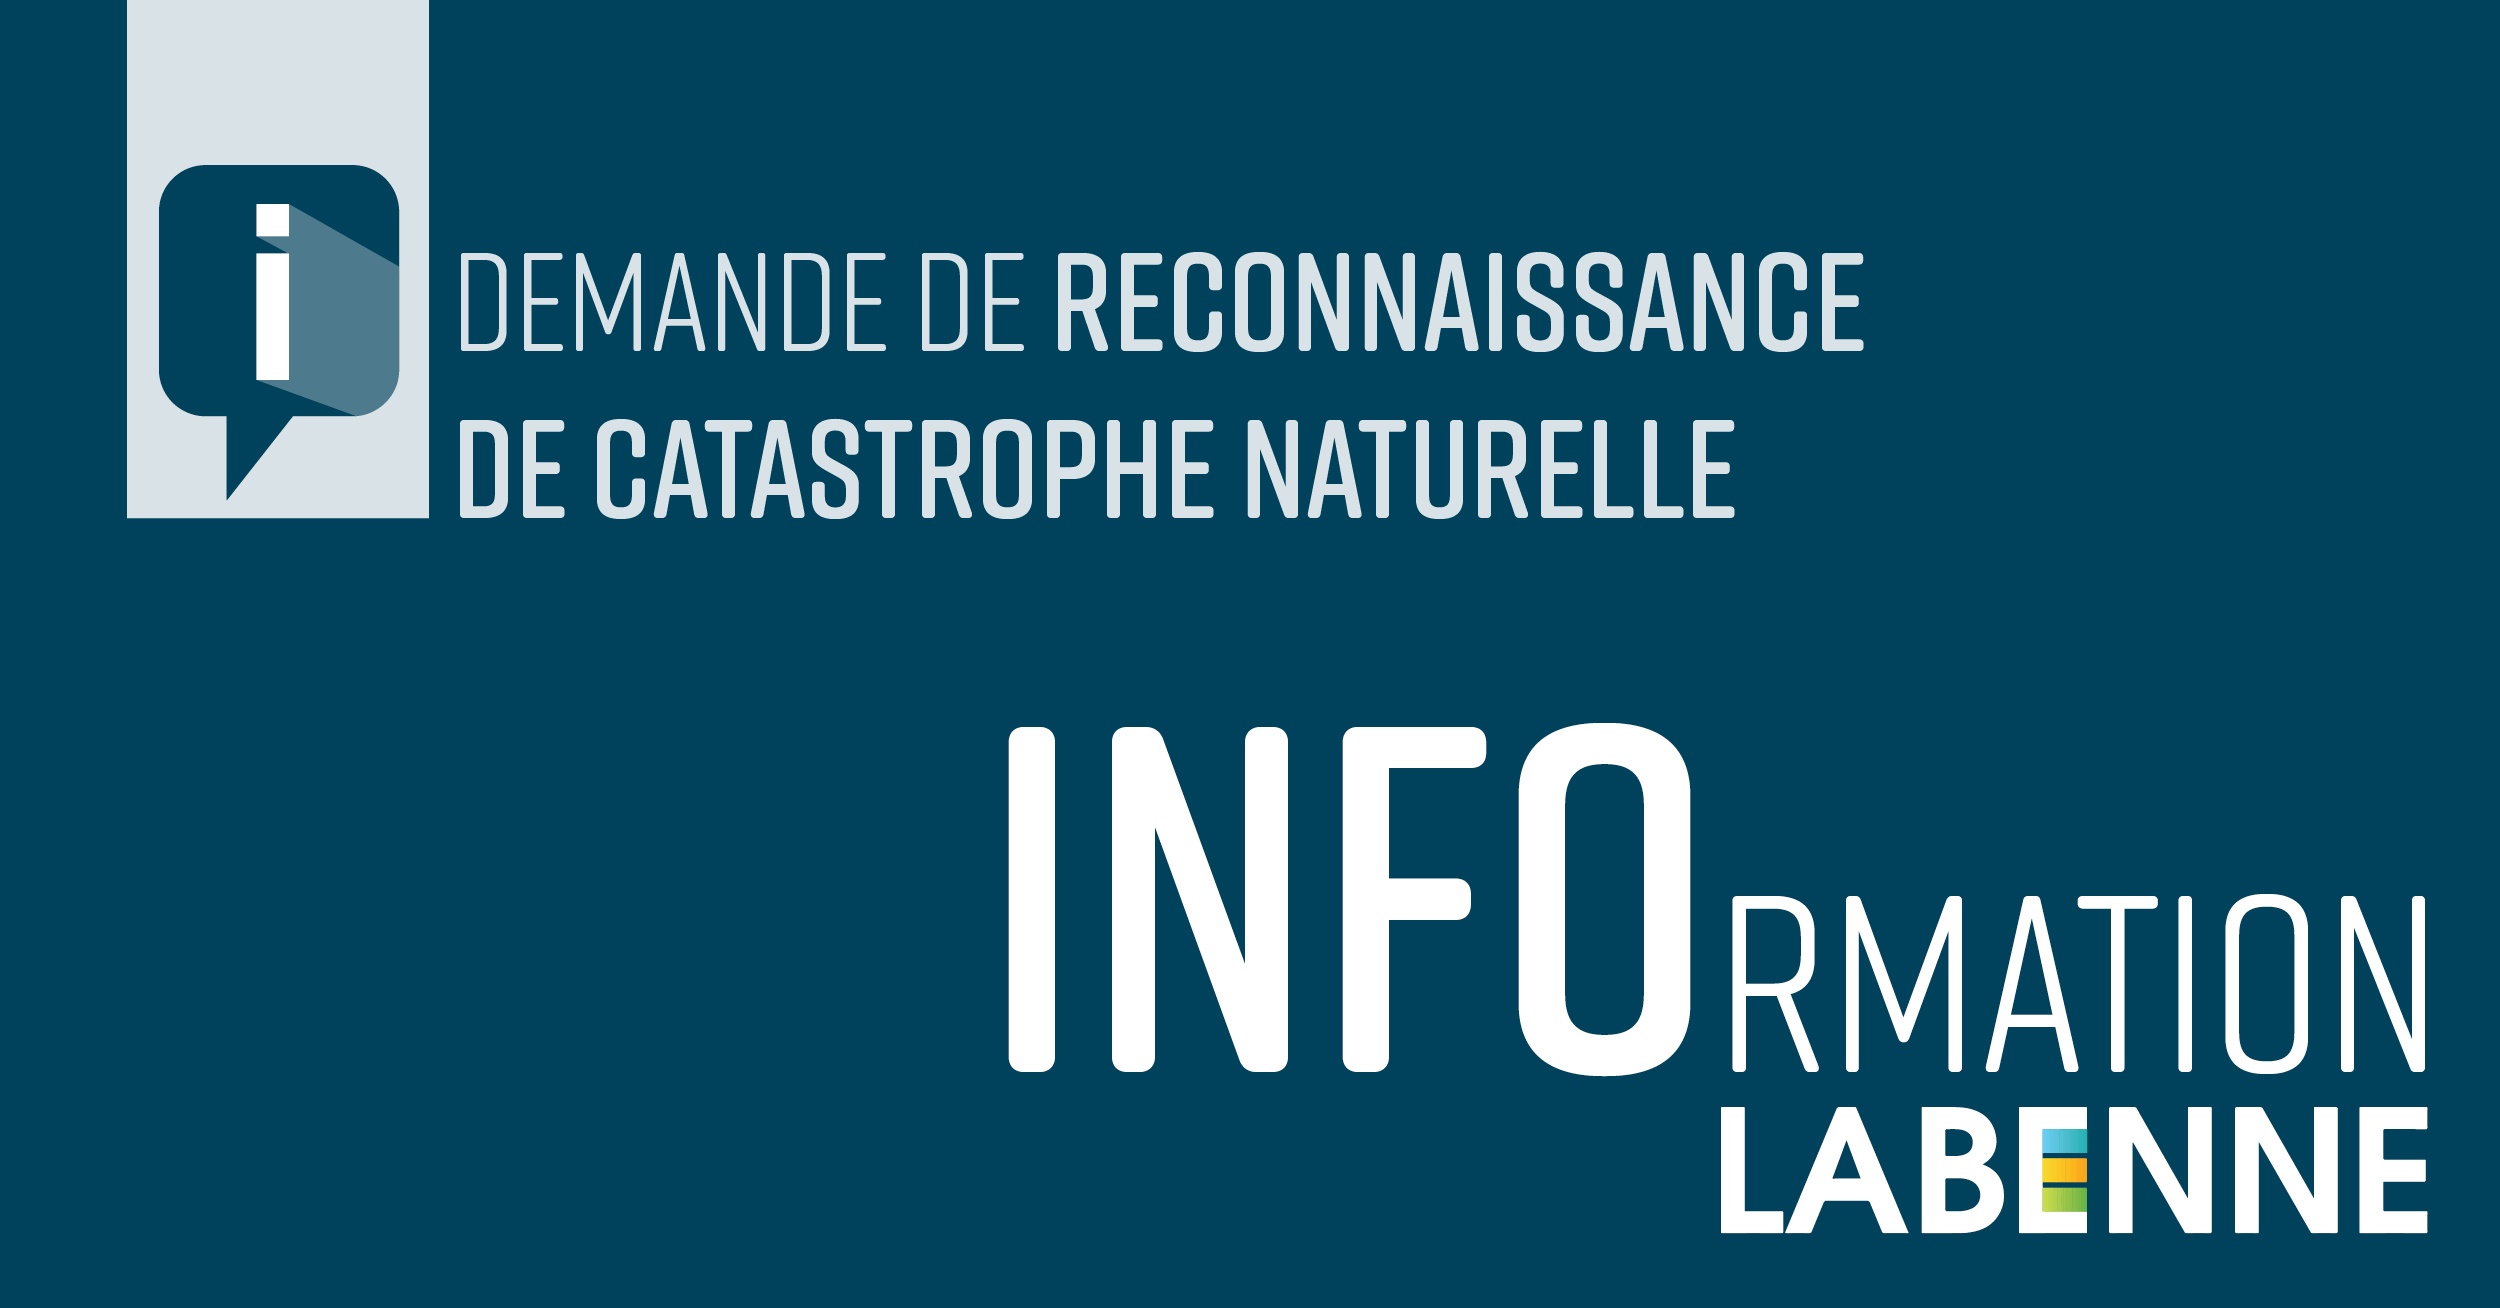 Info DEMANDE DE RECONNAISSANCE DE CATASTROPHE NATURELLE / labenne